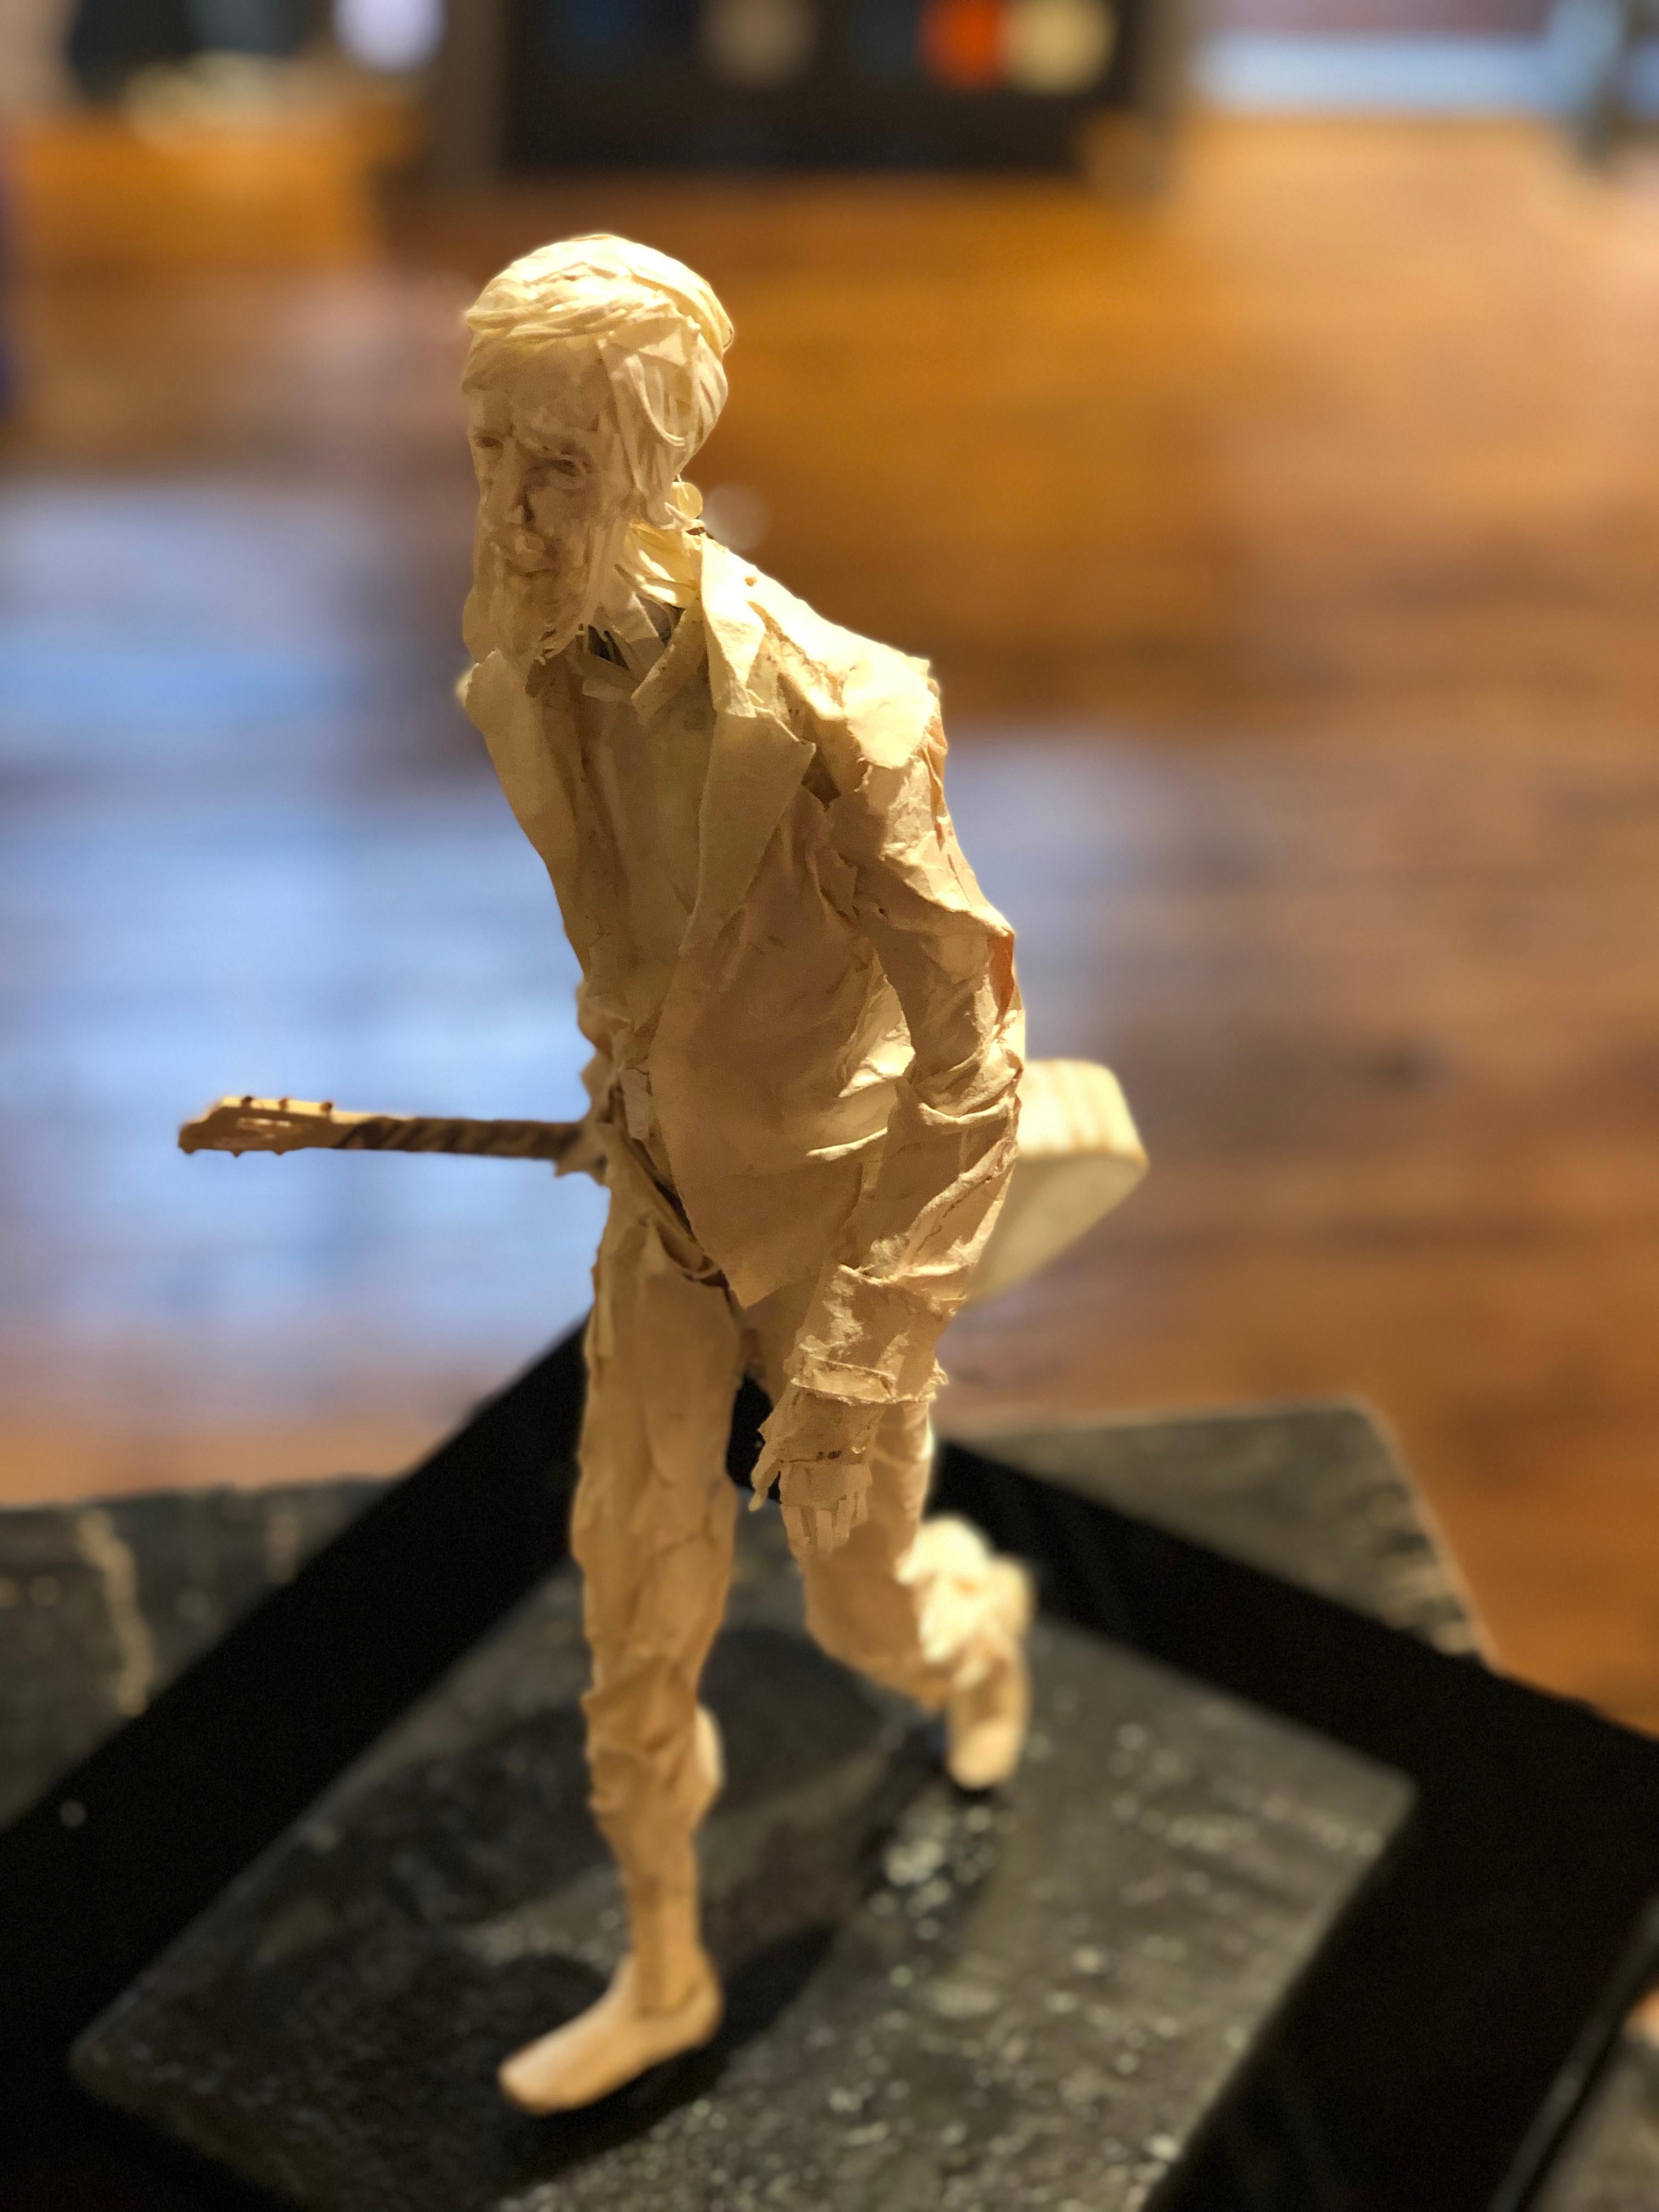 Jimmy - Handmade Paper Sculpture of a Street Musician with Guitar Walking 2